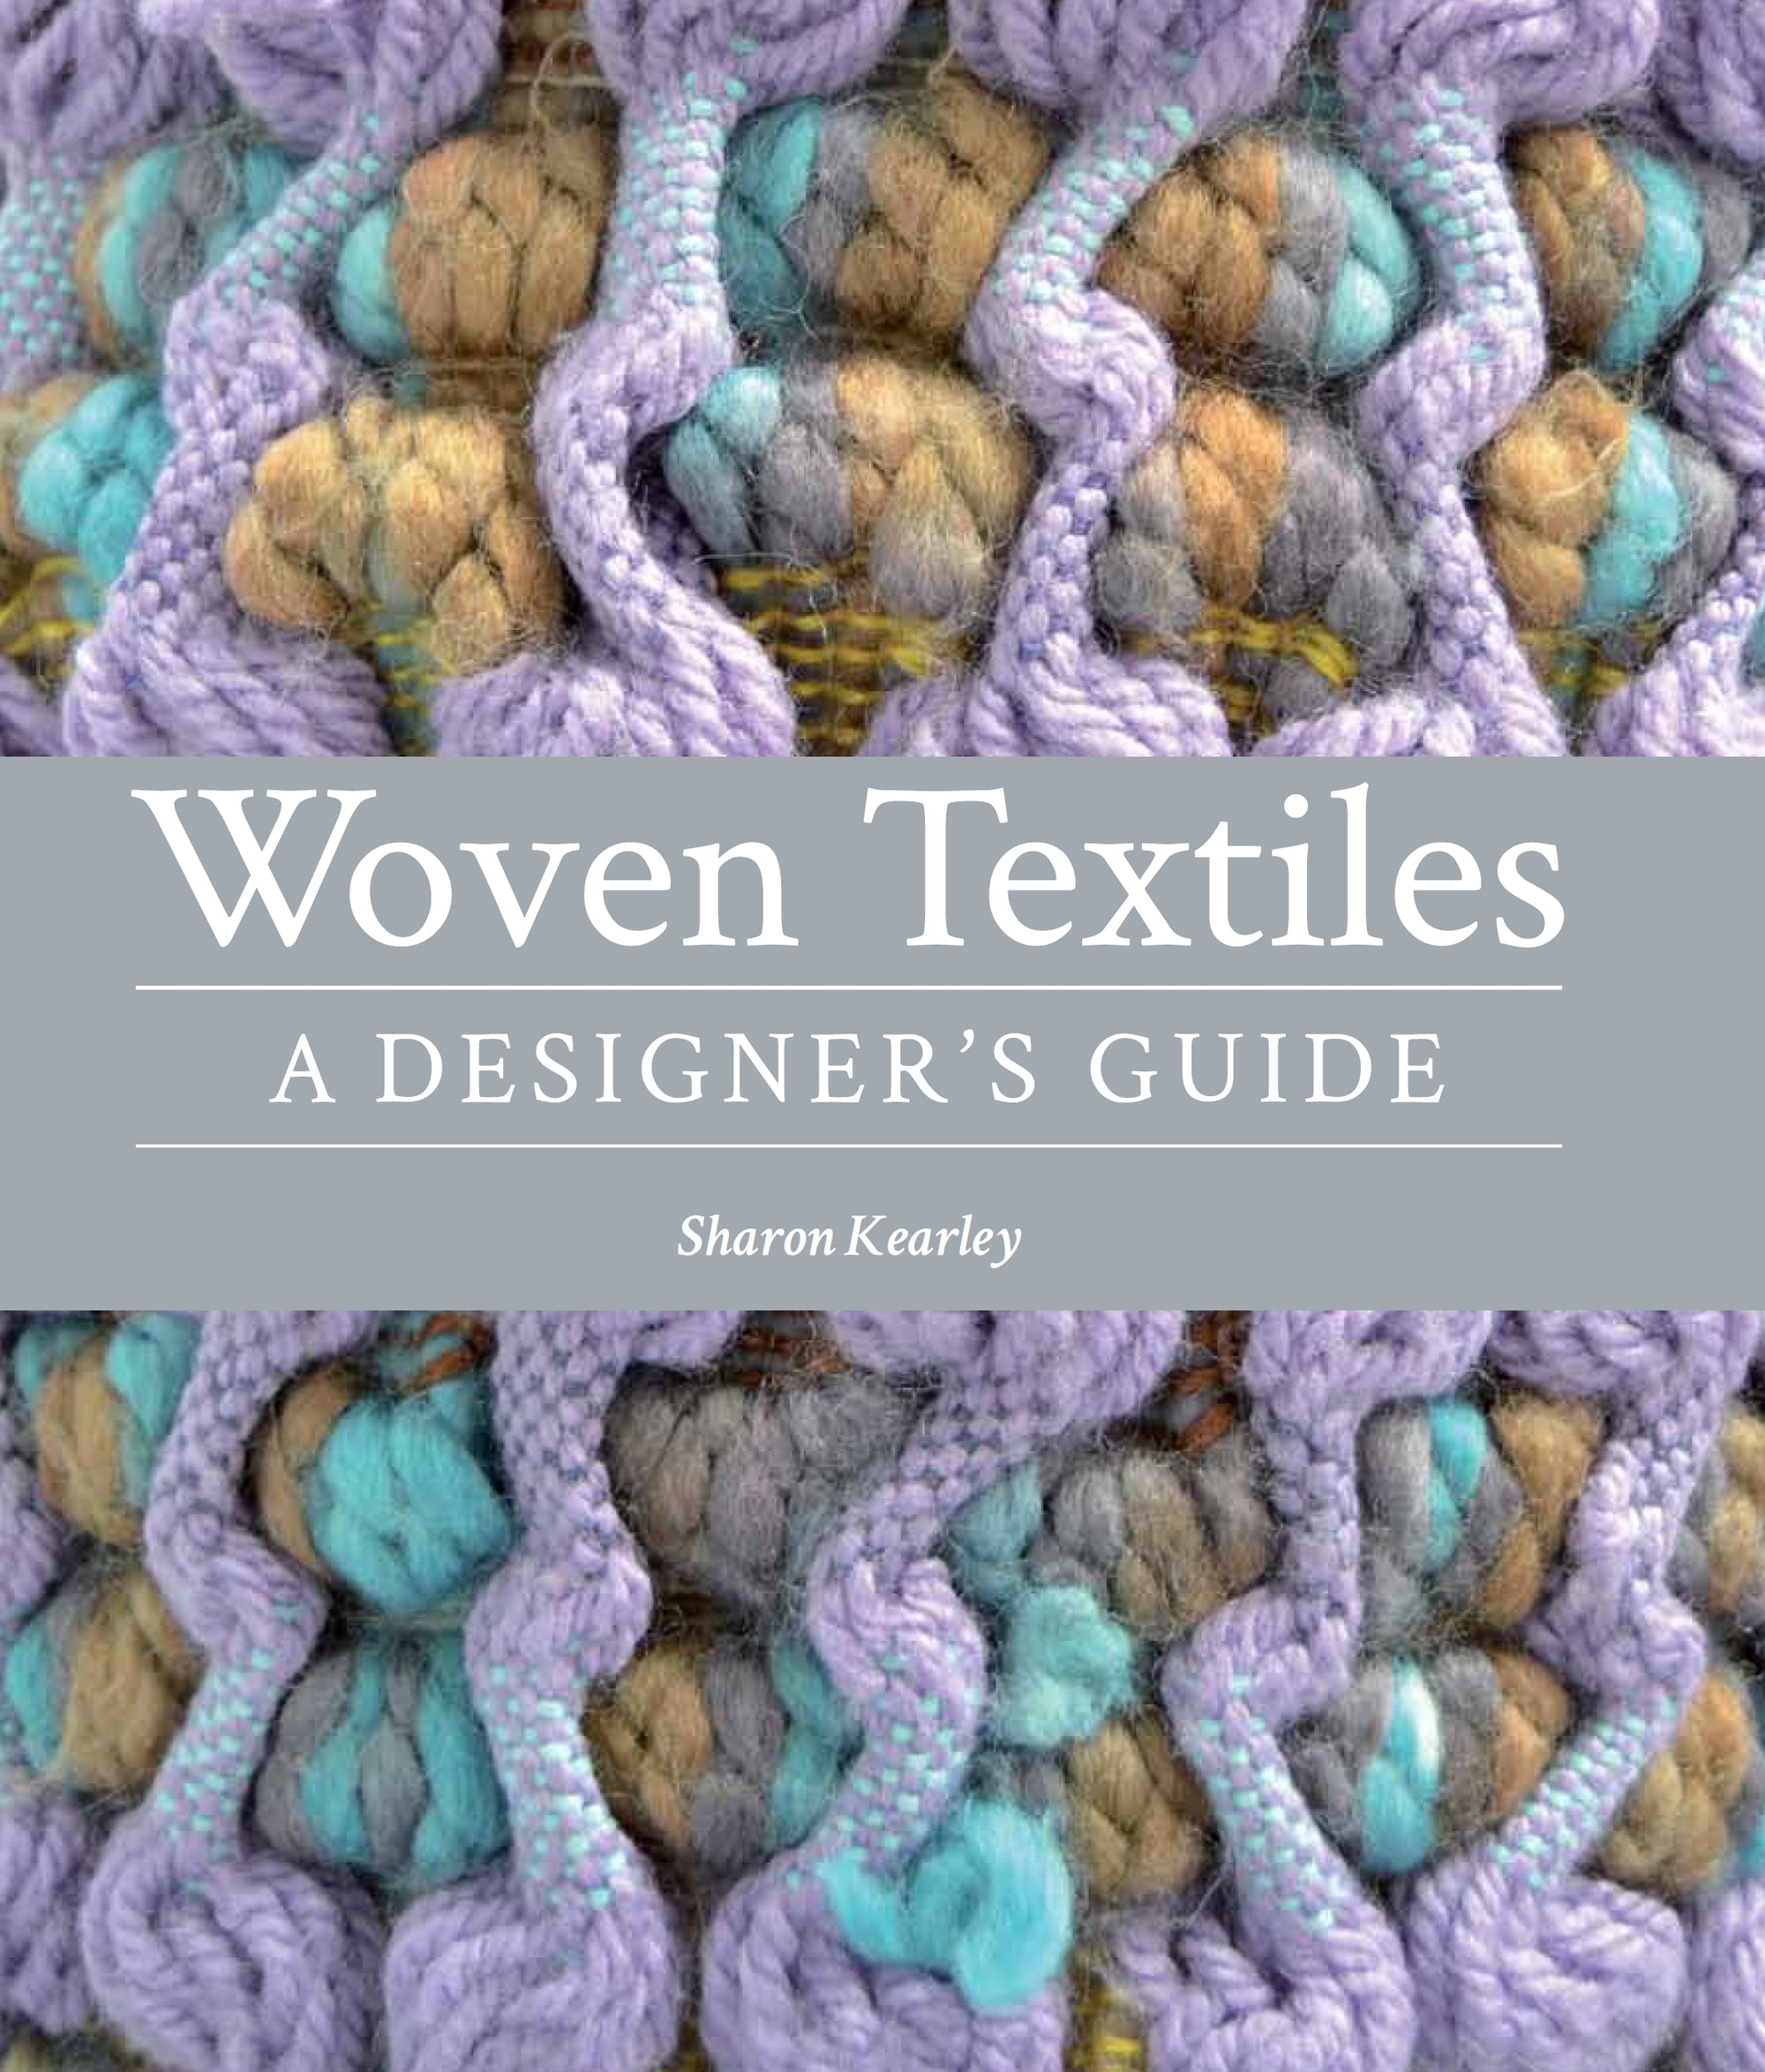 Woven Textiles